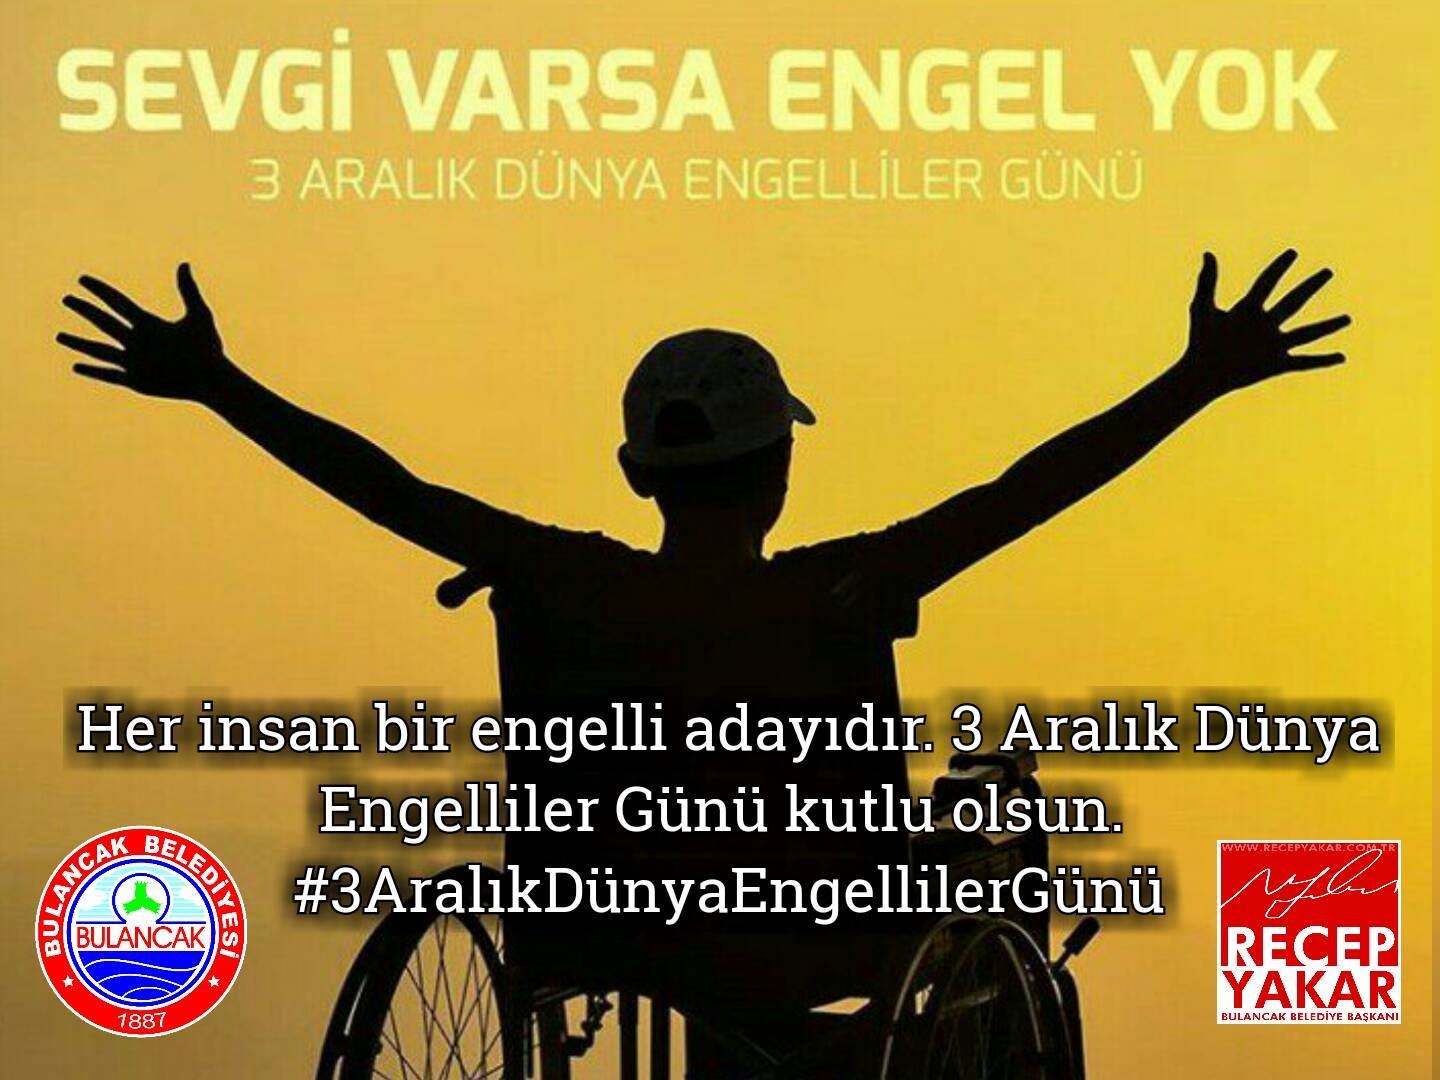 Başkan Yakar’dan 3 Aralık Dünya Engelliler günü mesajı